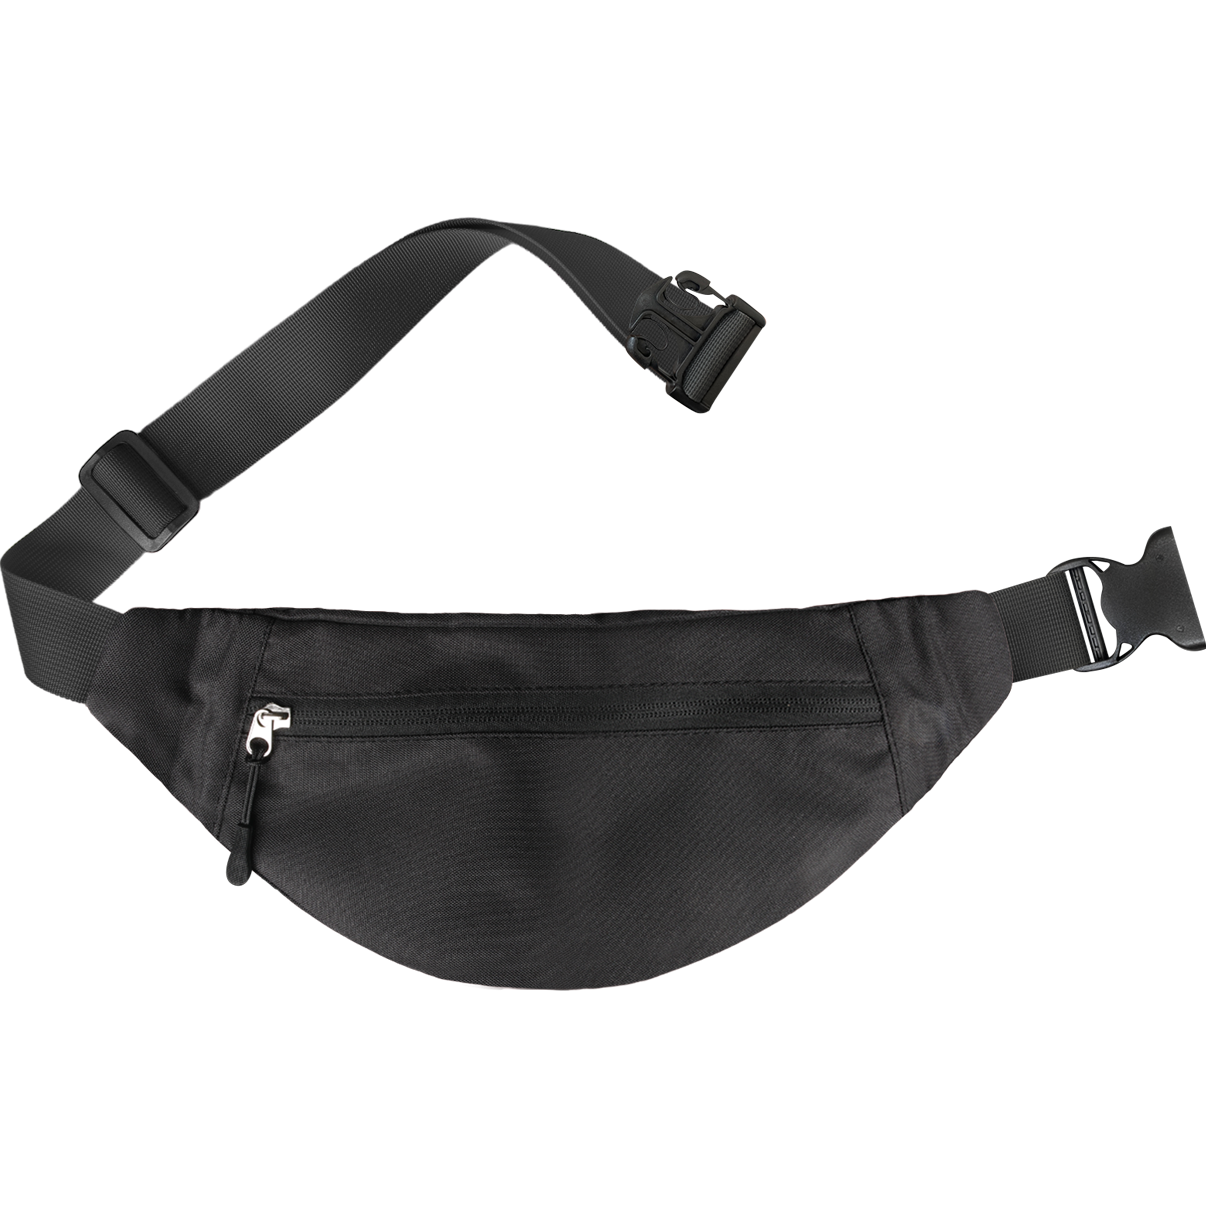 Zol Moda Waist Bag (Black) - Zol Cycling